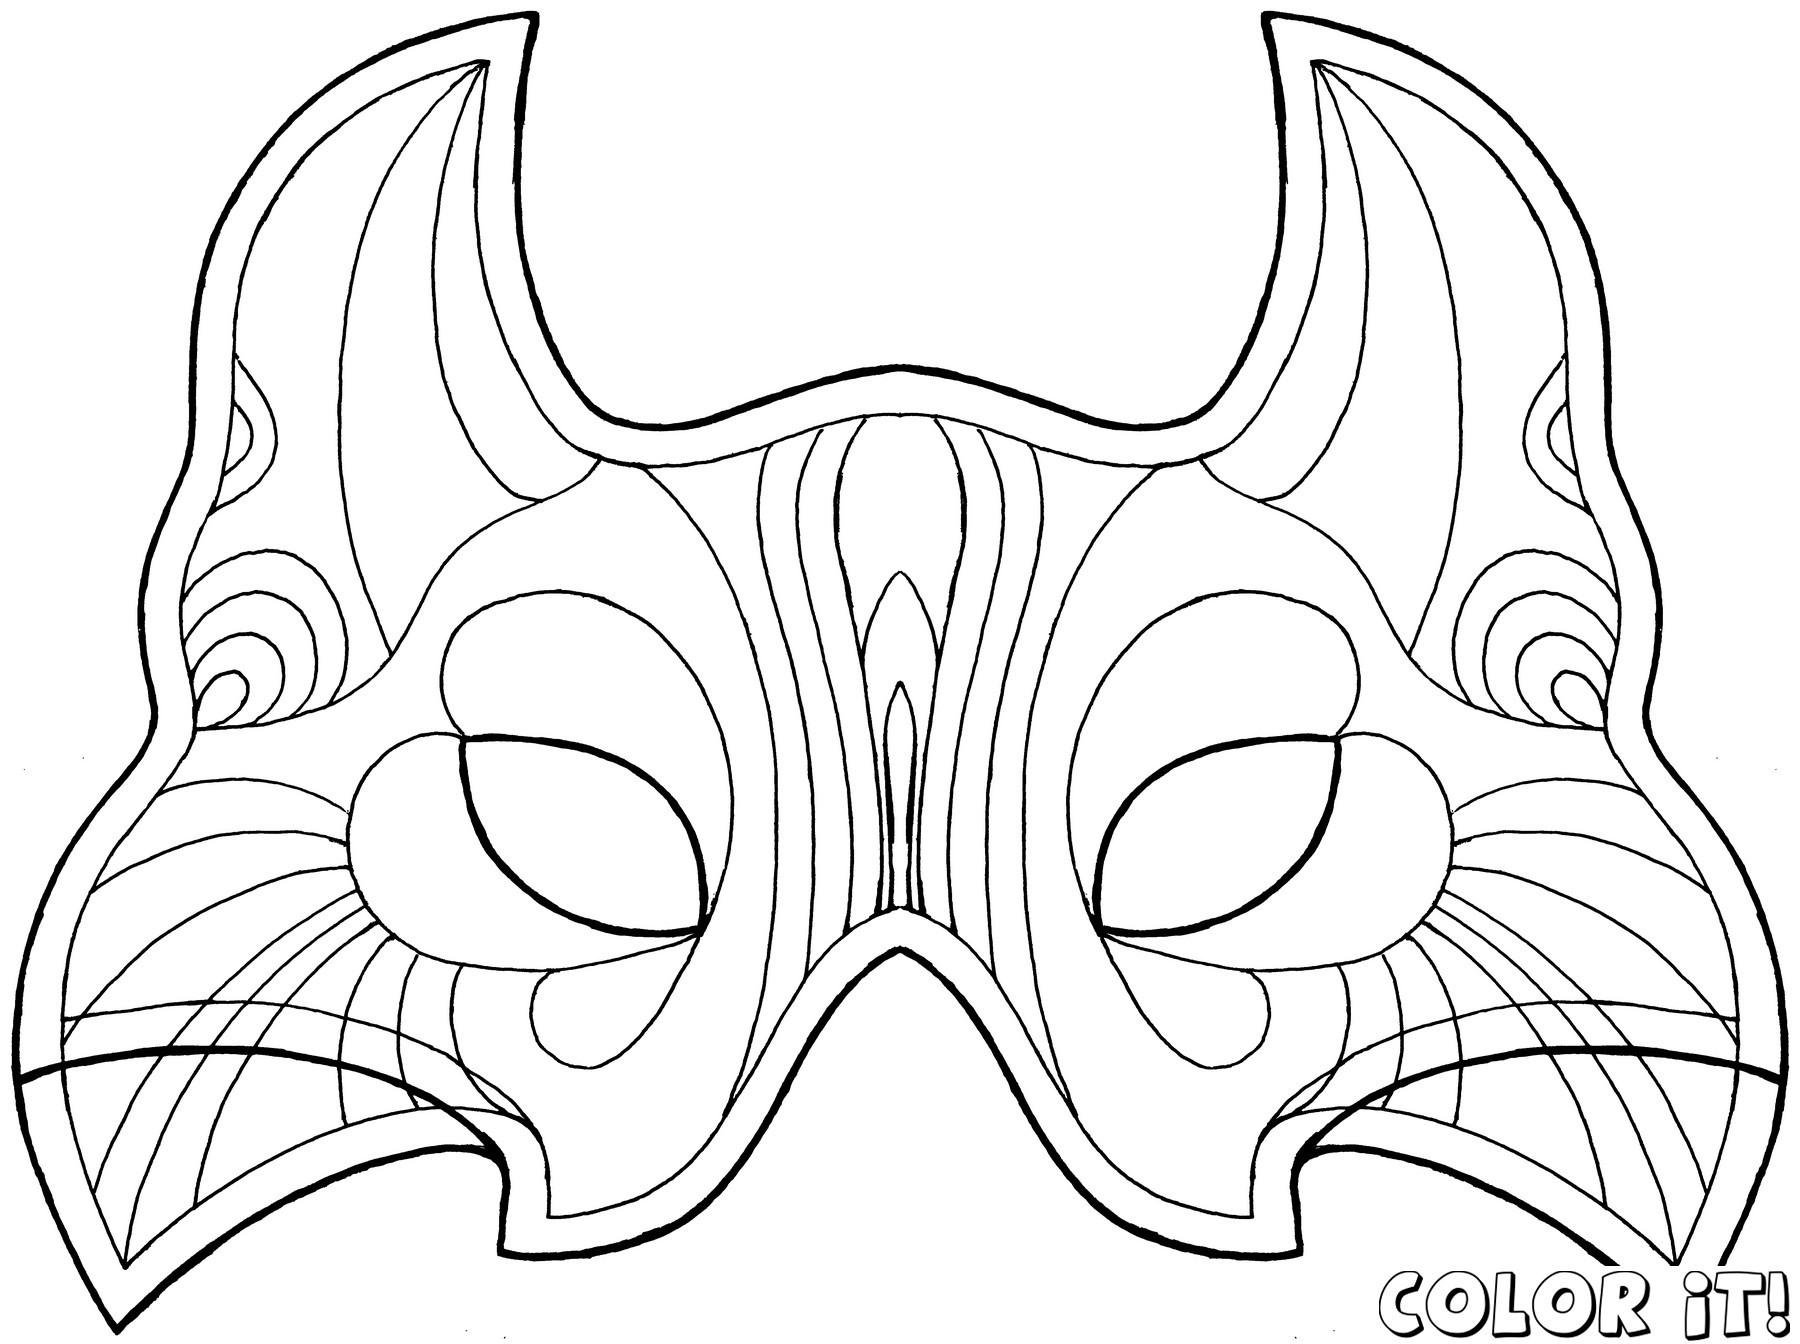 Free Printable Character Face Masks | Masks,  Image Templates - Free Printable Face Masks